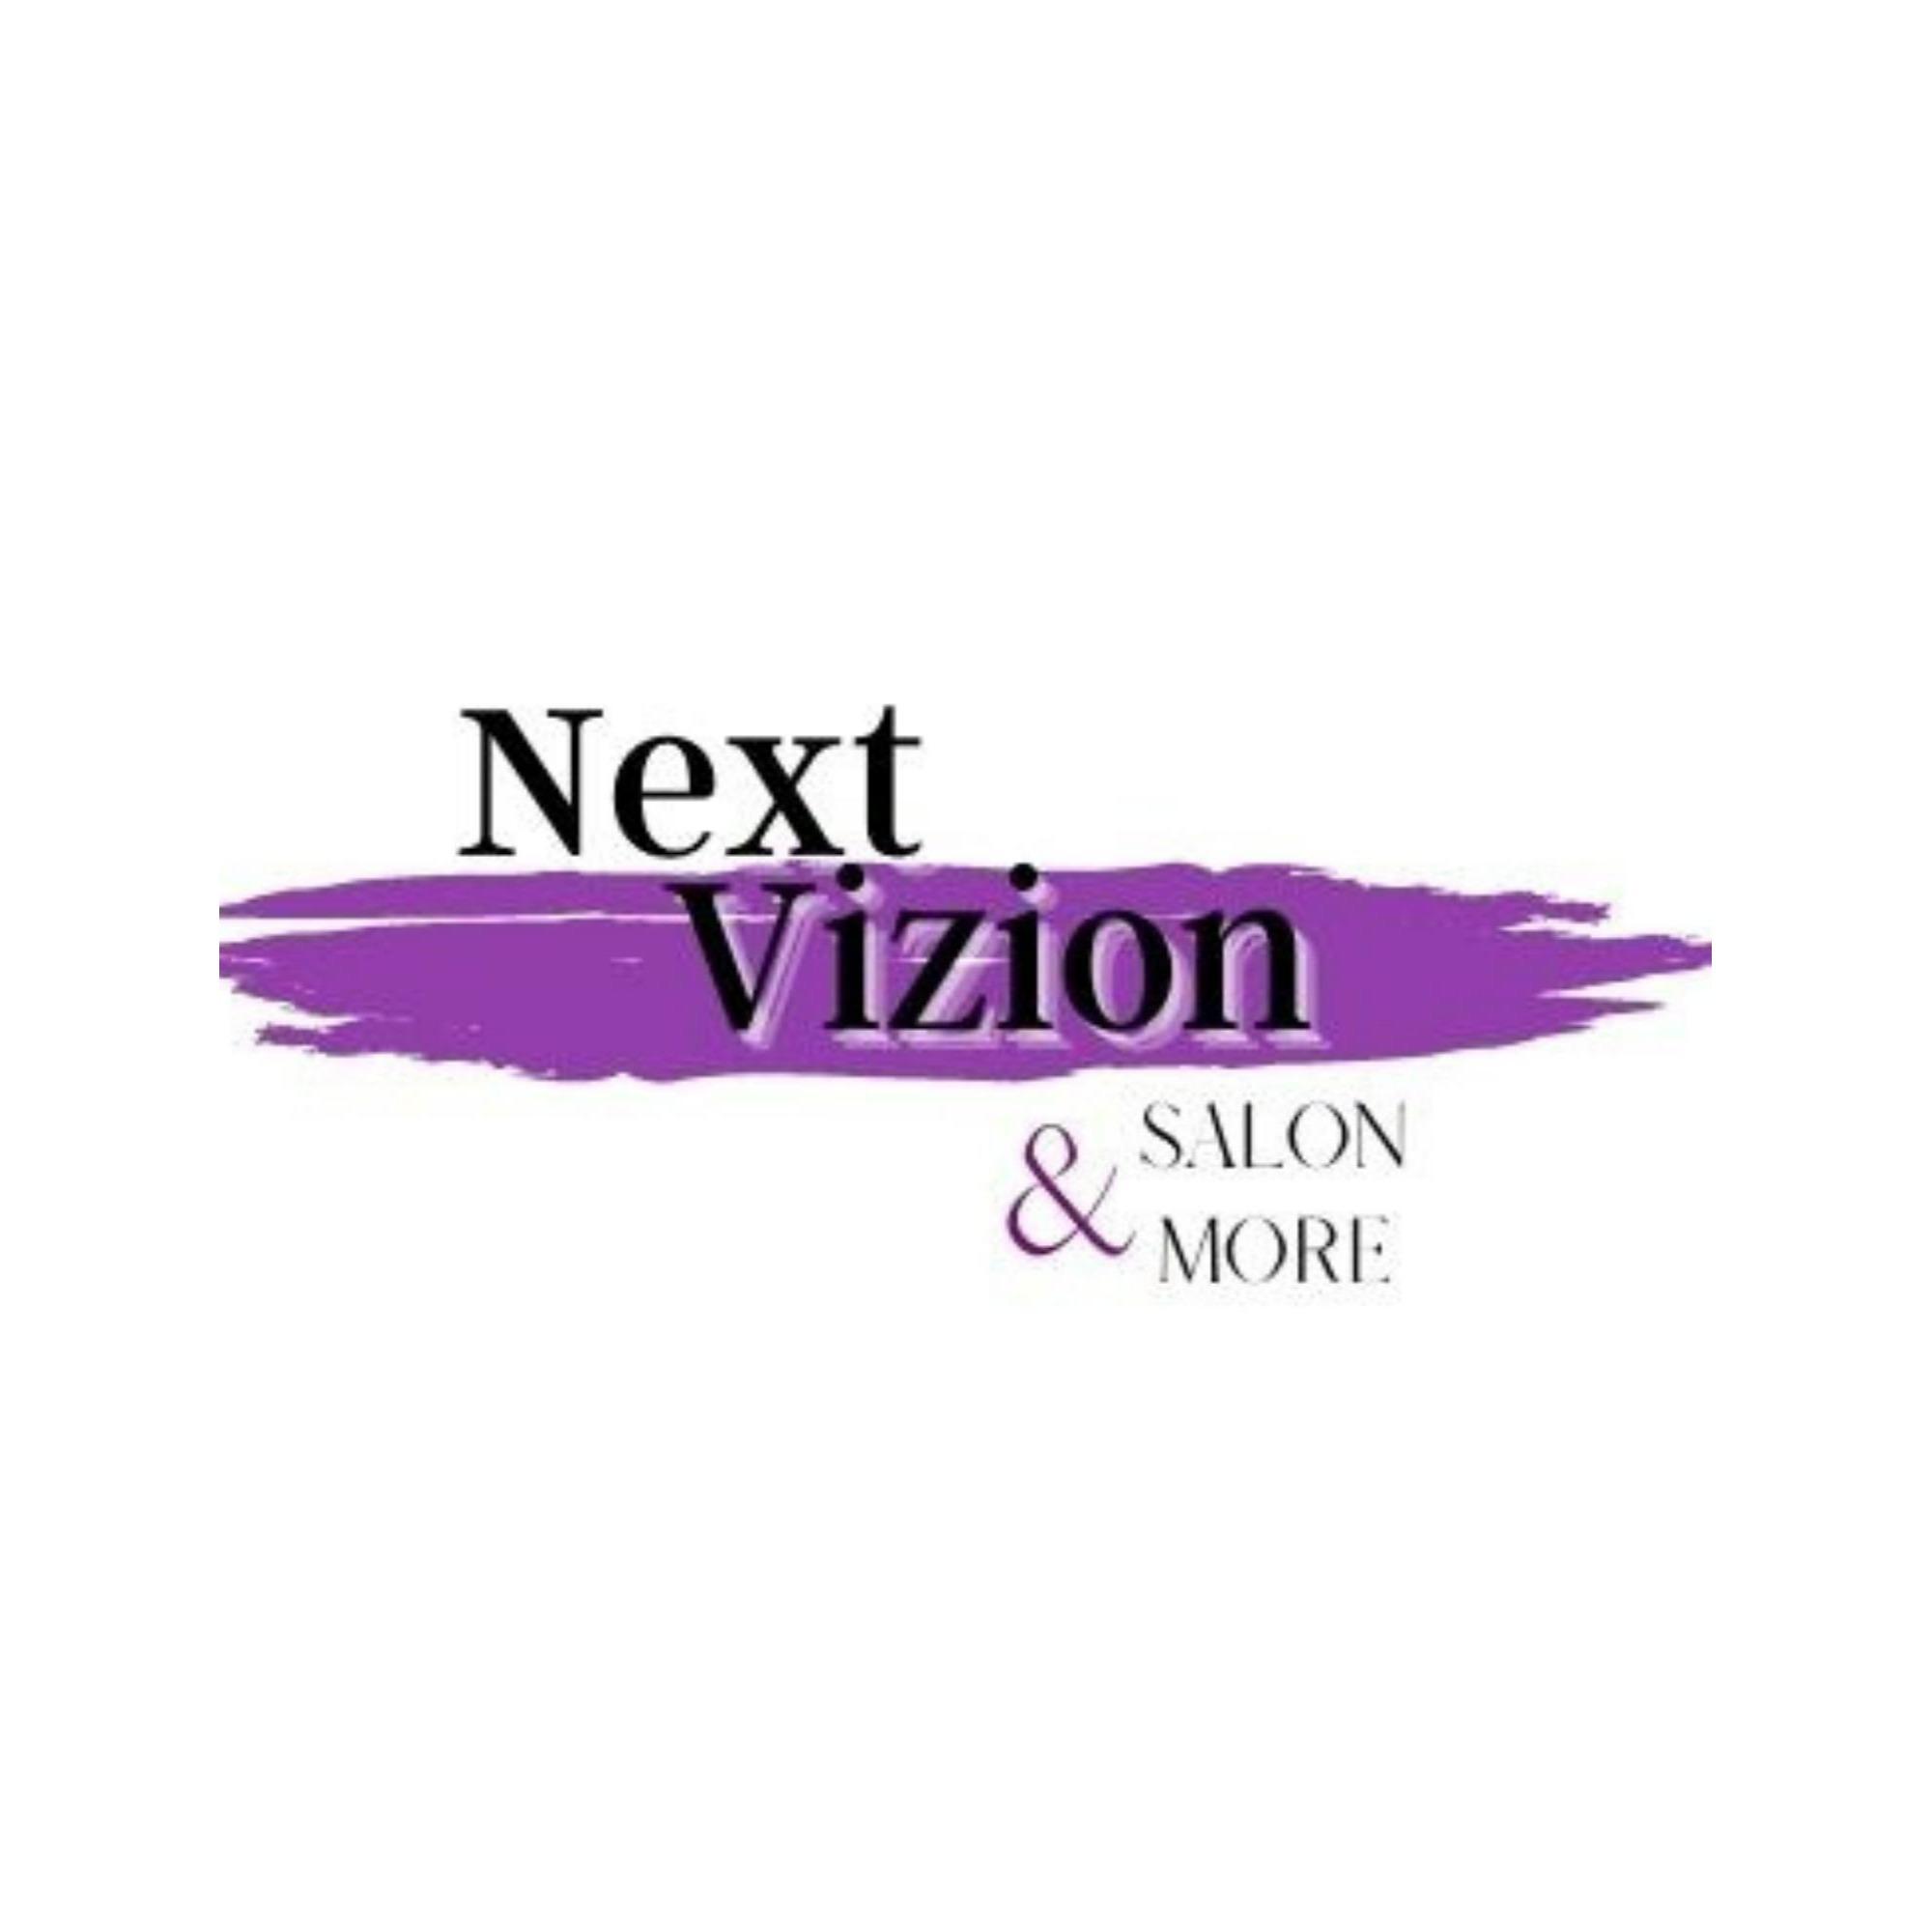 Next Vizion Salon & More - Omaha, NE 68144 - (402)281-4200 | ShowMeLocal.com